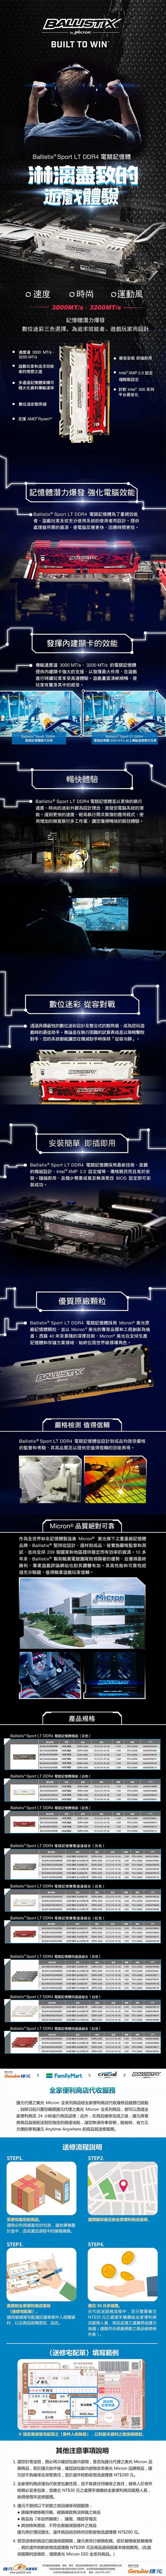 美光 Ballistix Sport LT 16G (8Gx2) DDR4-3200 競技版 白色